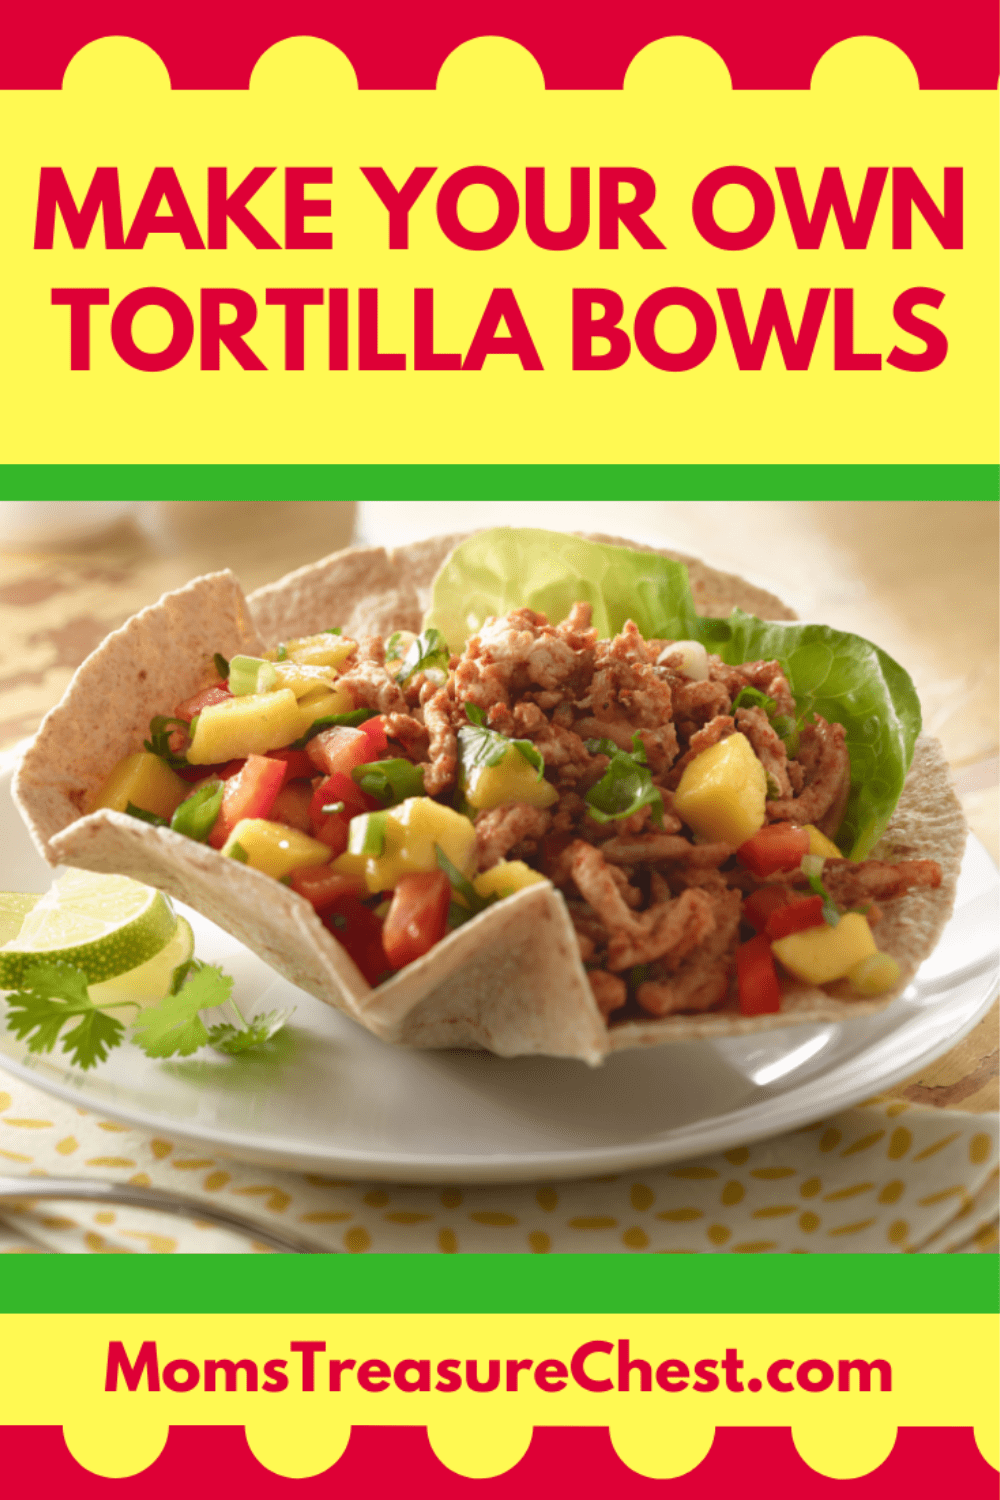 Tortilla bowls